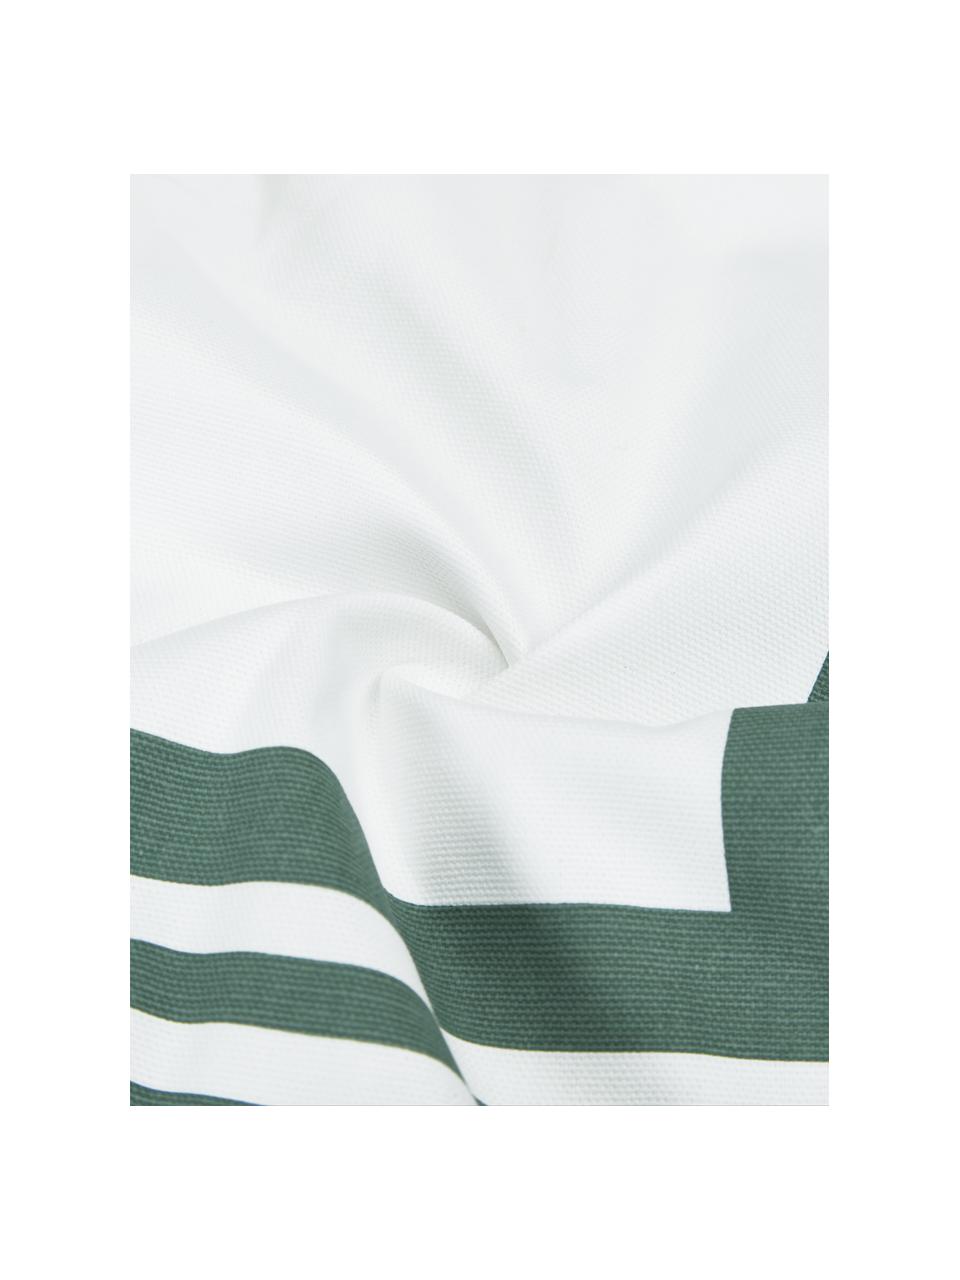 Kussenhoes Zahra in saliegroen/wit met grafisch patroon, 100% katoen, Wit, groen, B 45 x L 45 cm